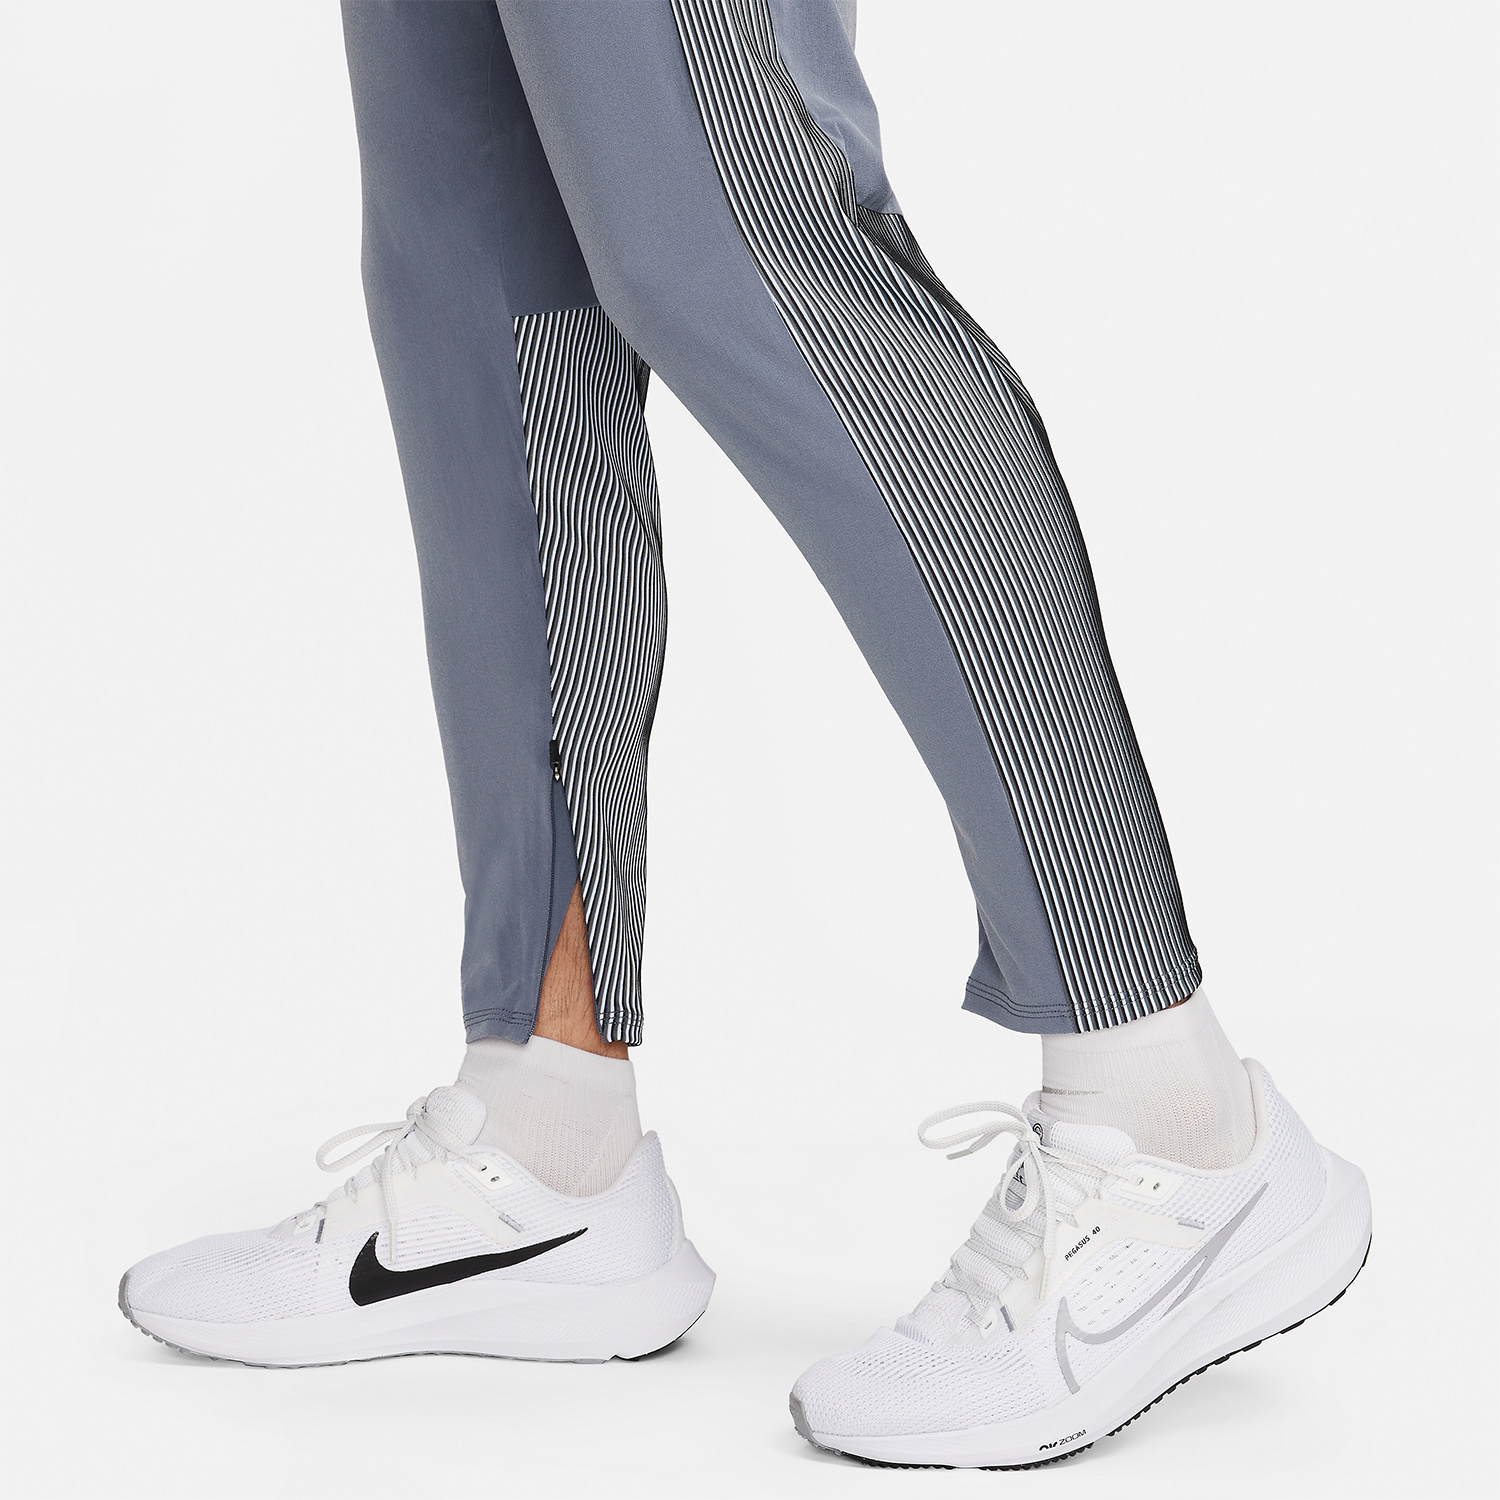 Nike AeroSwift Pants - Light Carbon/Black